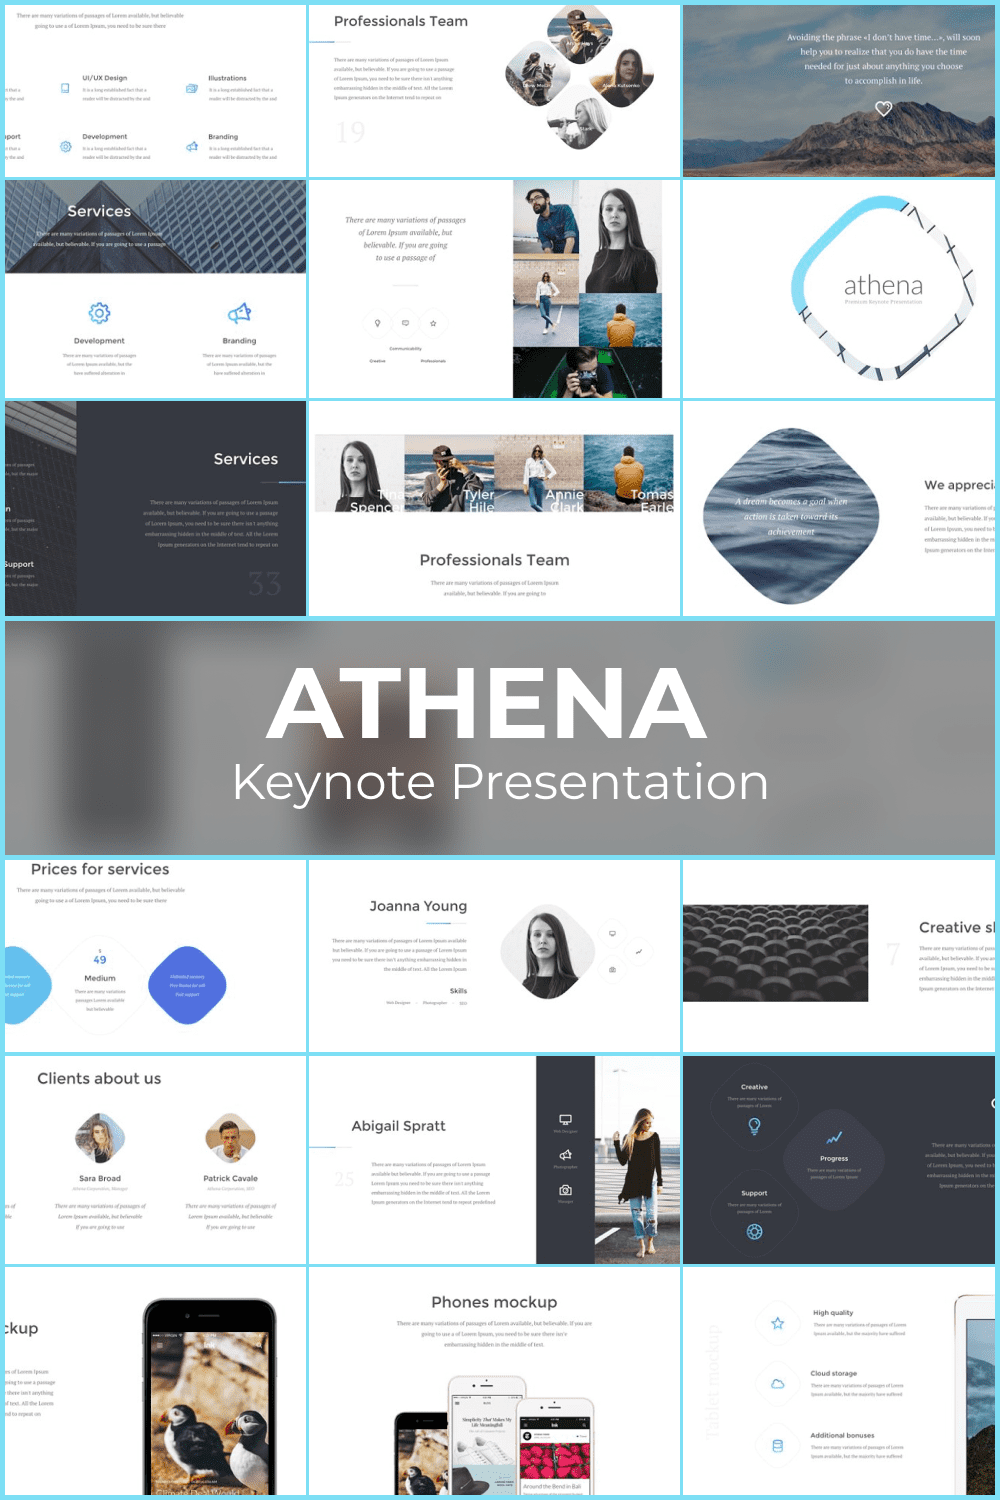 Athena Keynote Presentation - Pinterest.